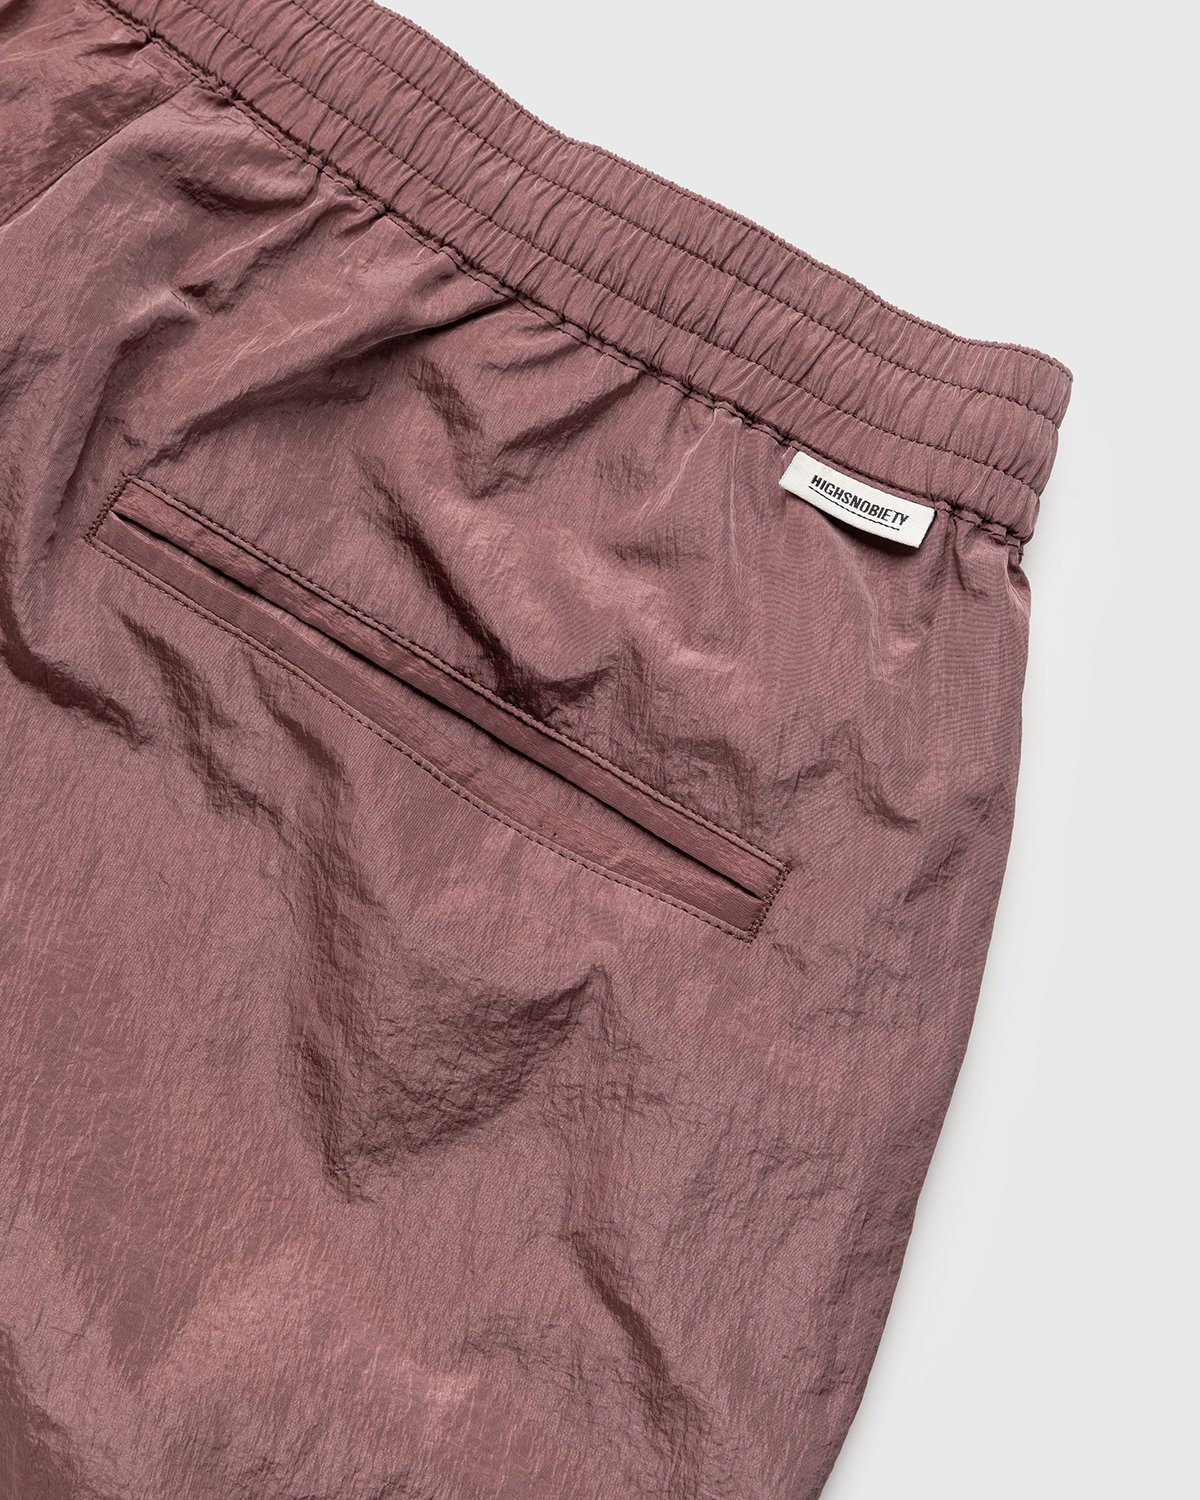 Highsnobiety - Crepe Nylon Shorts Rose Gold - Clothing - Pink - Image 3